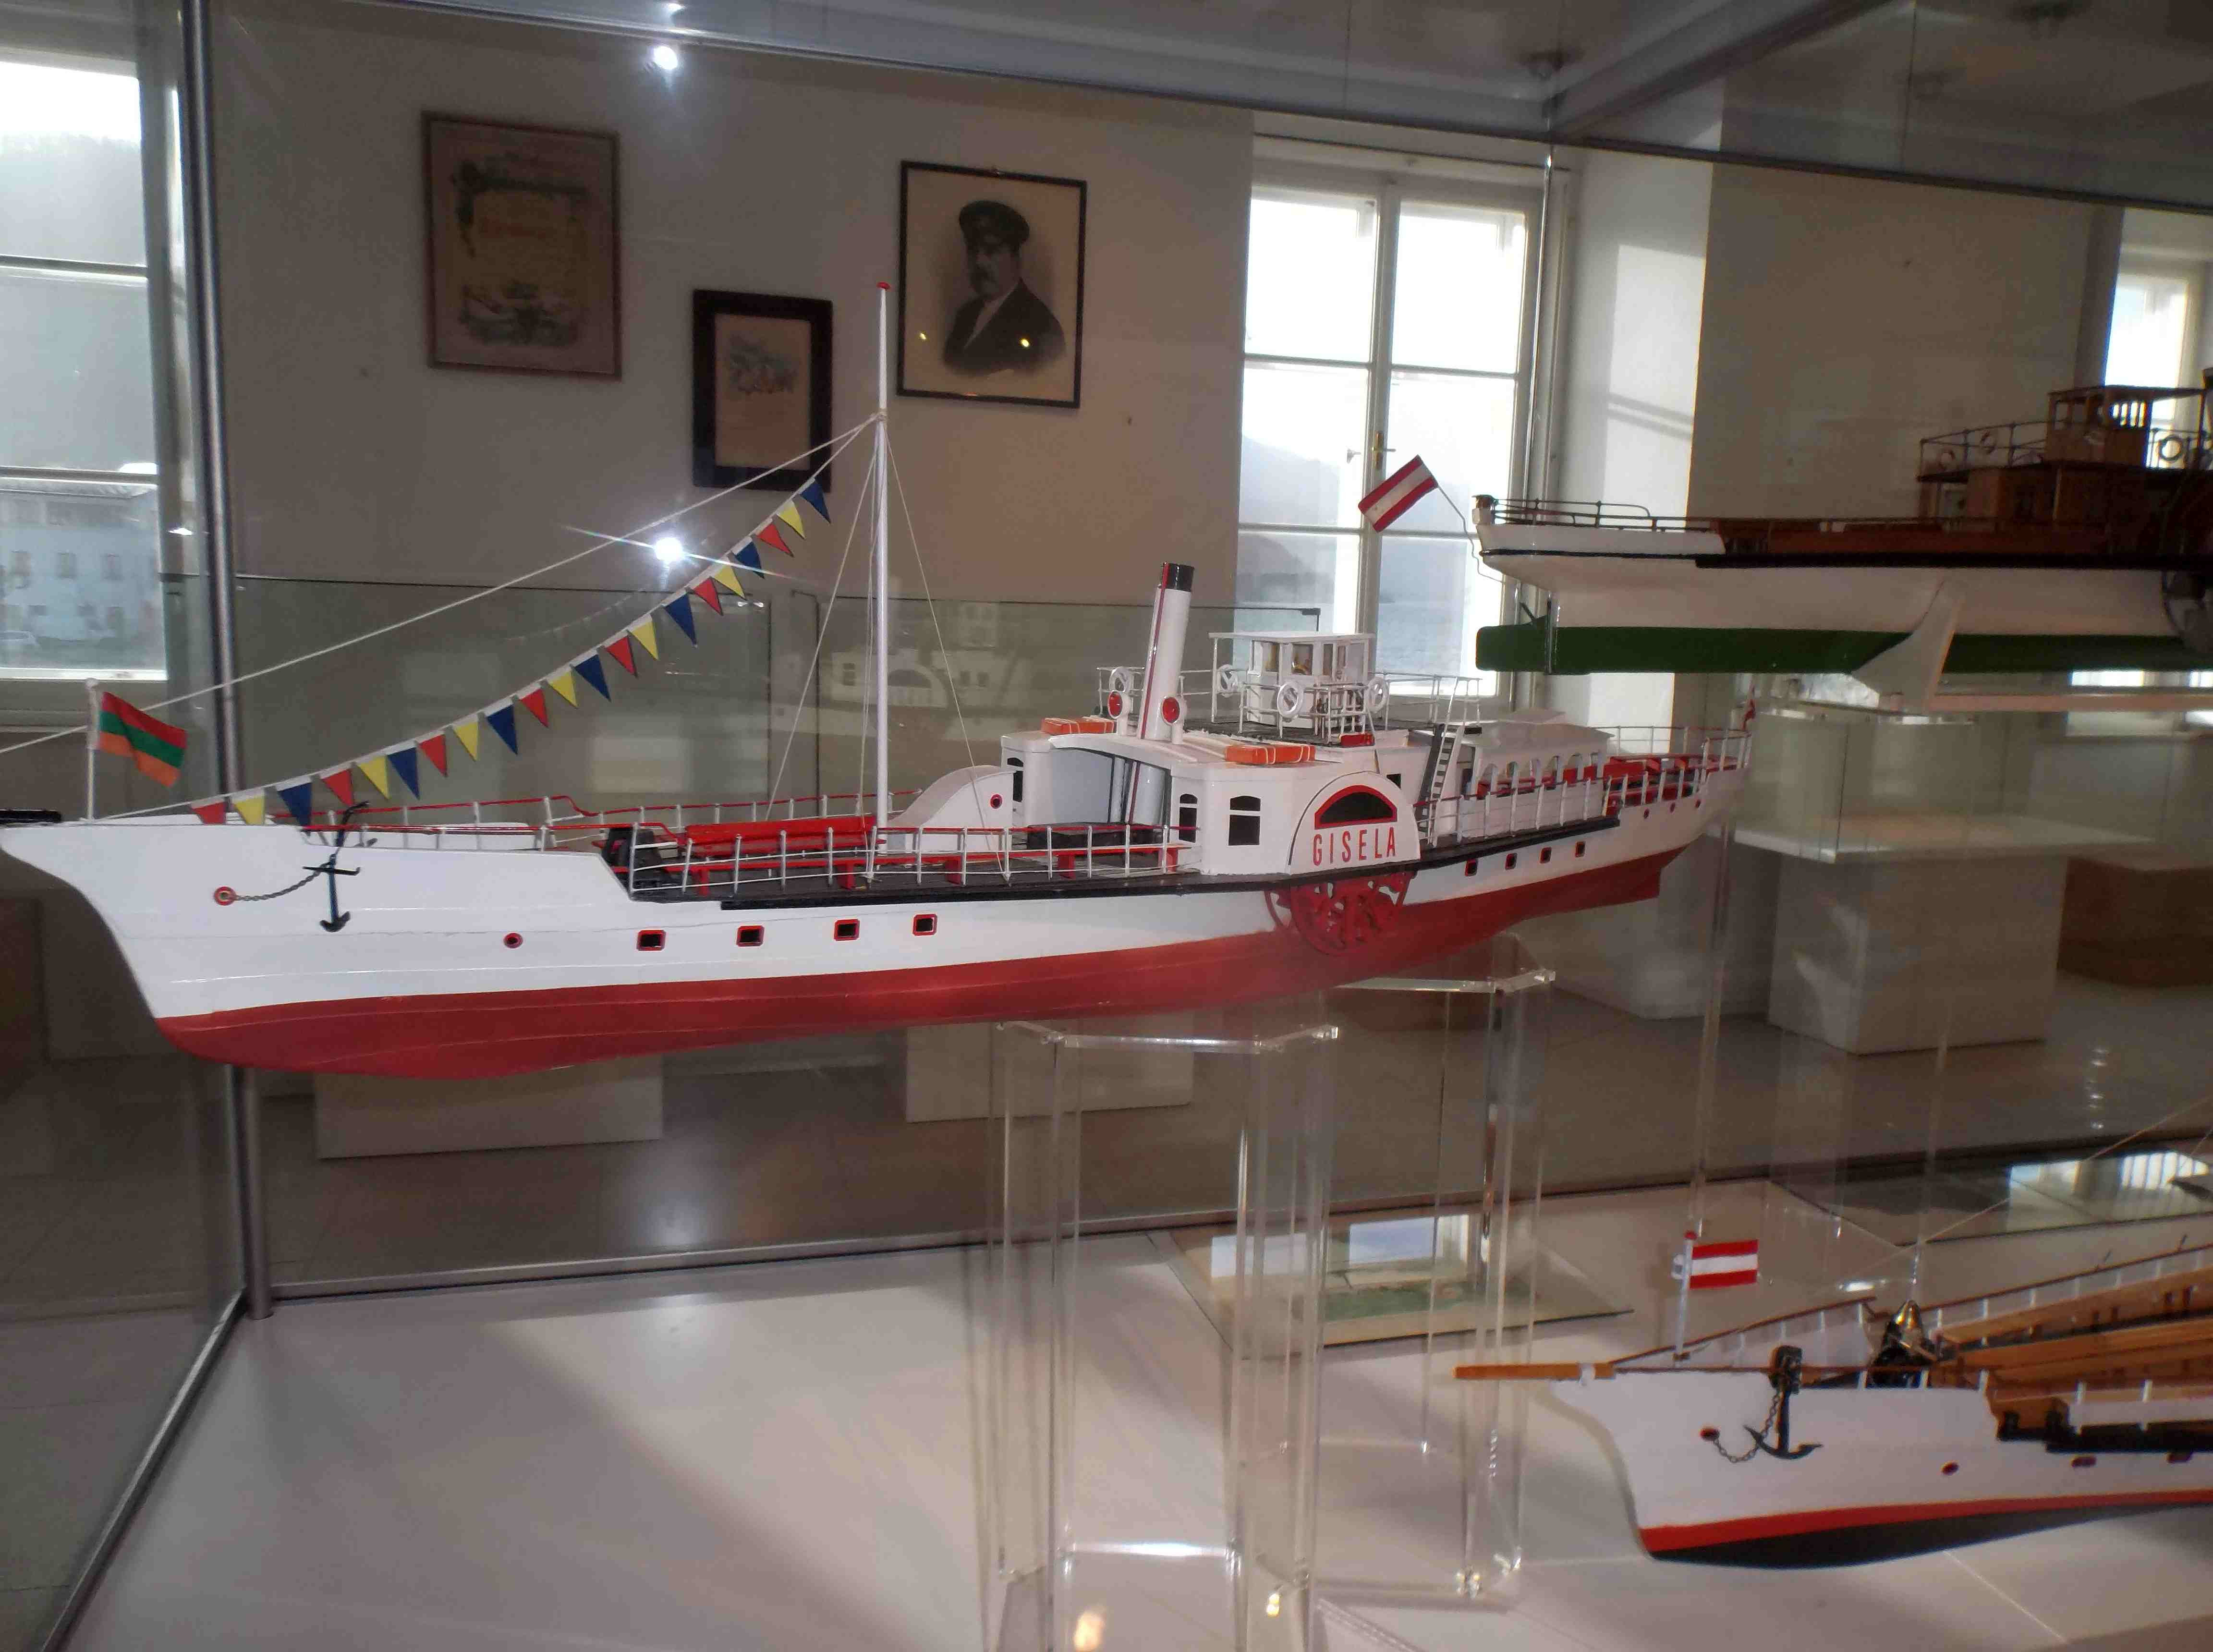 Modell des Raddampfers Gisela angefertigt von Ing. Jim Ruston, Nachfahre der Gründer der Traunsee-Dampfschifffahrt